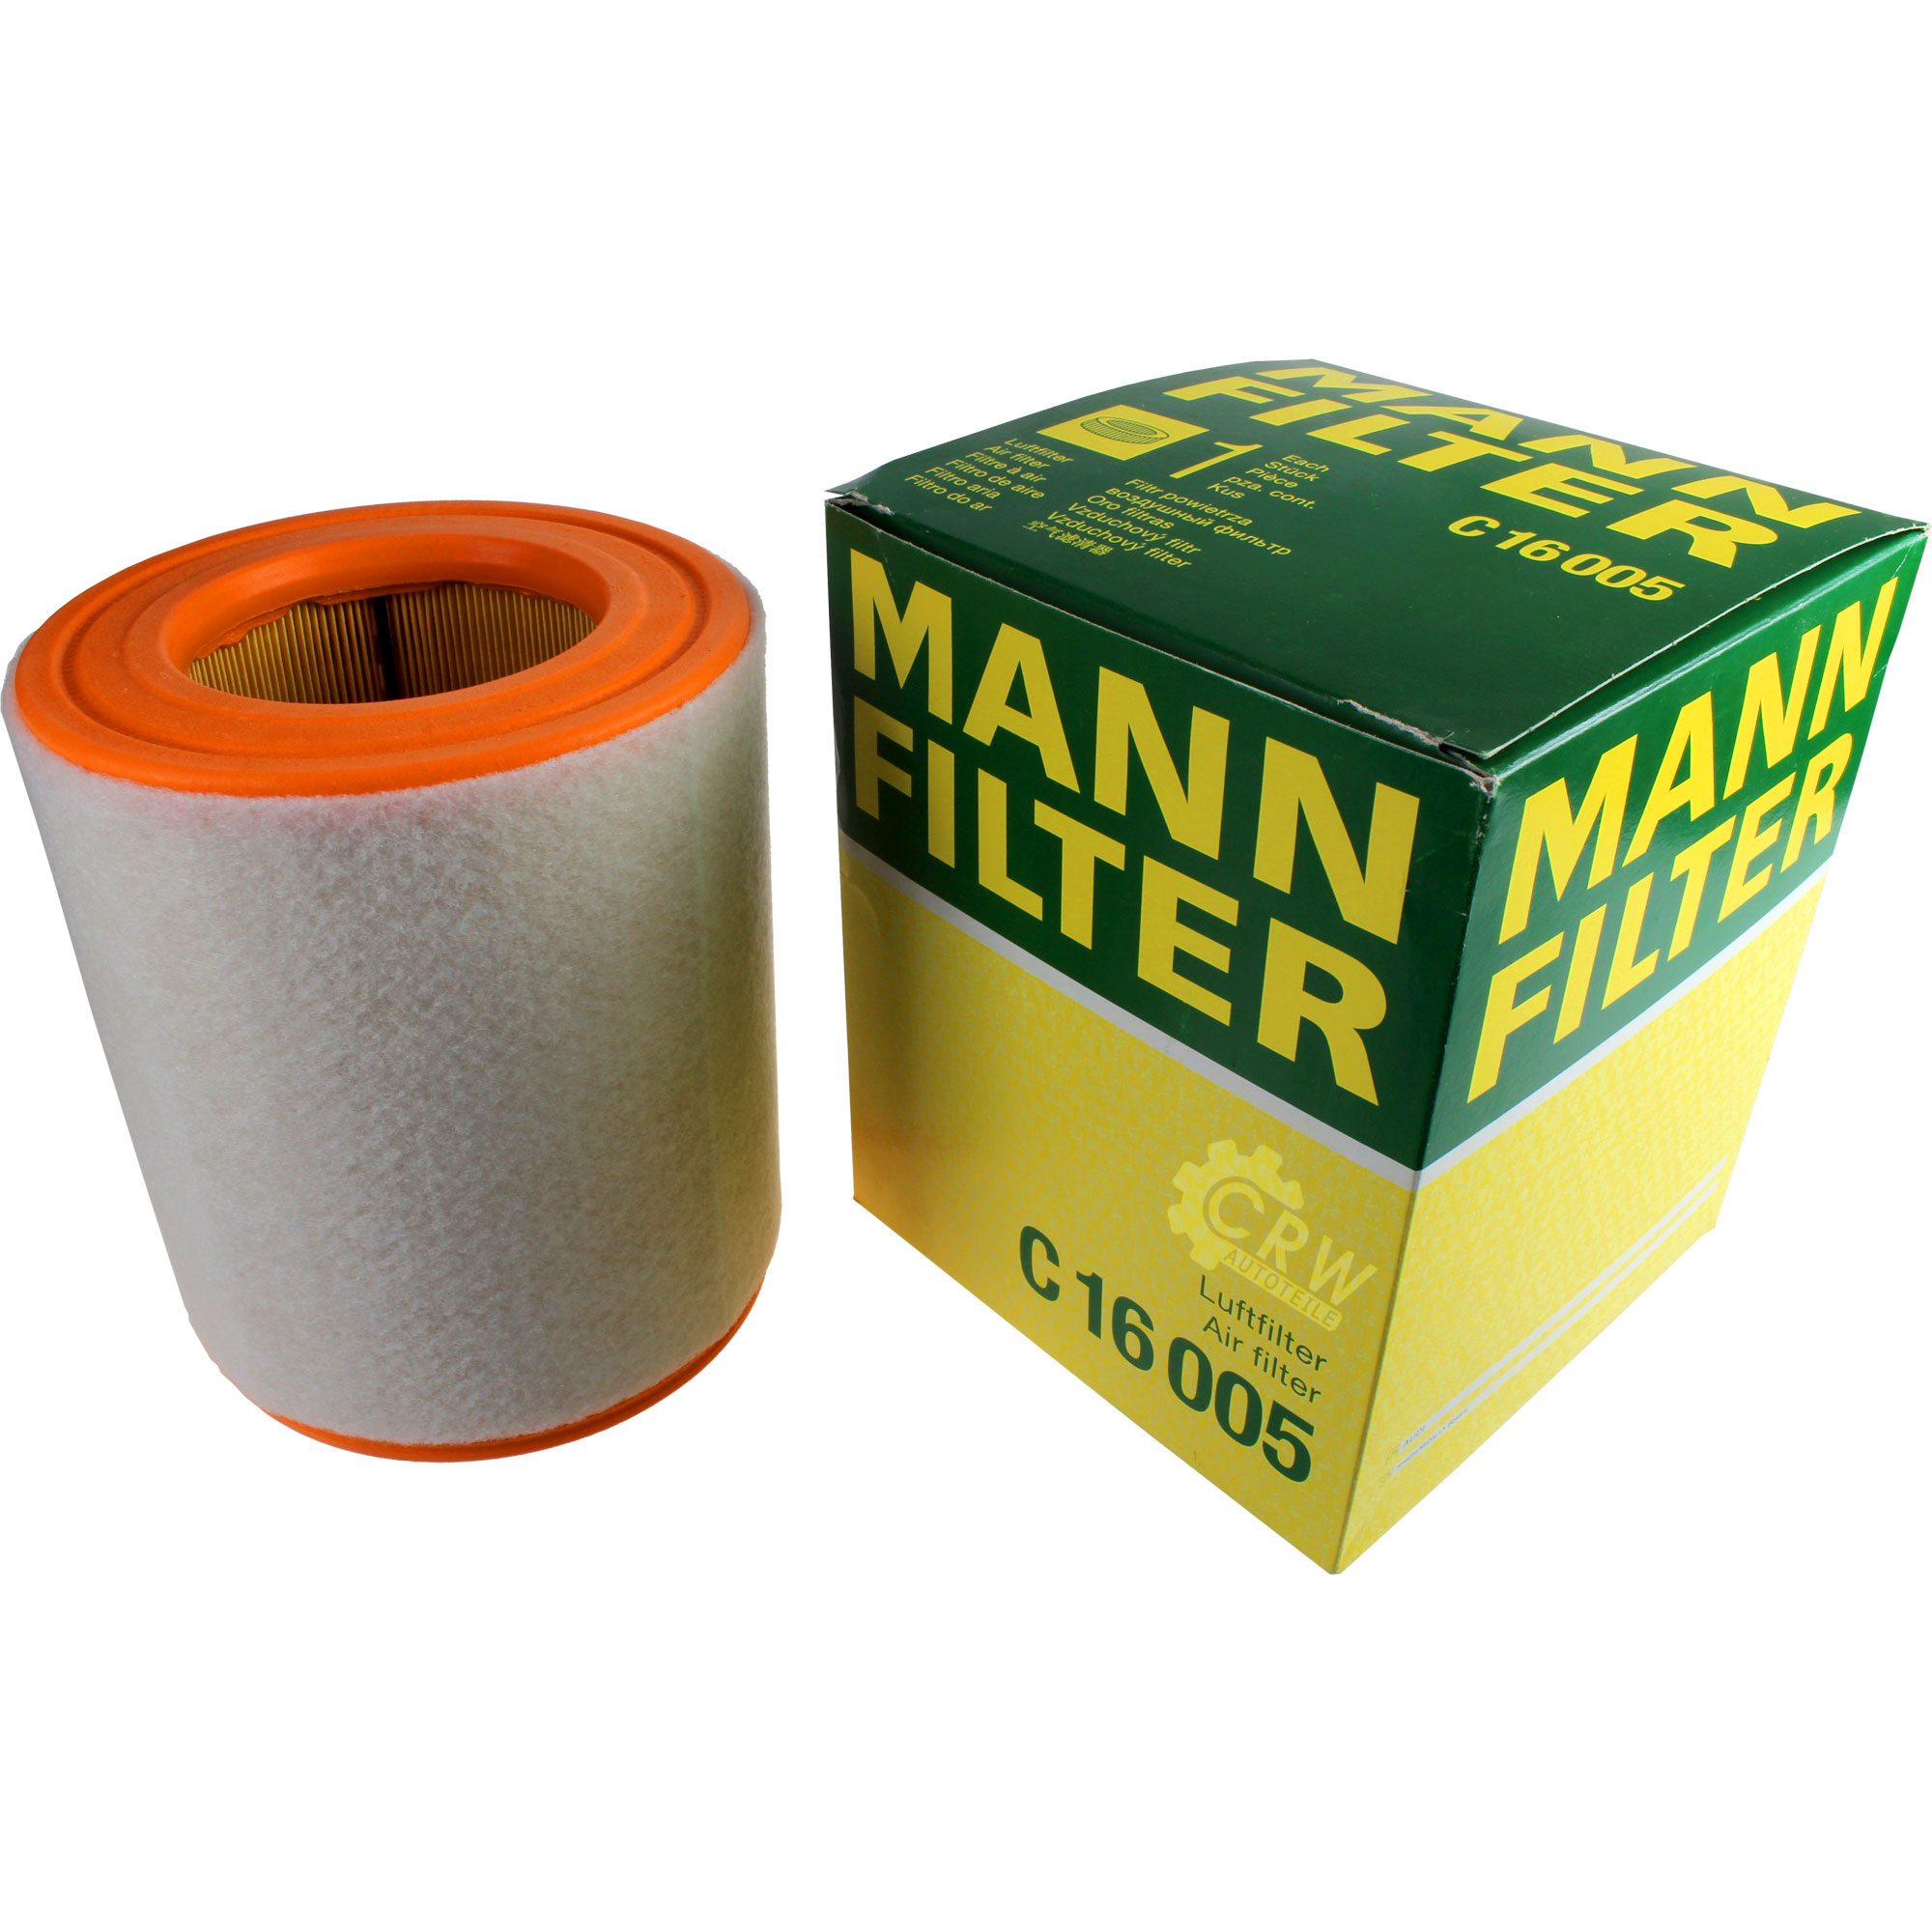 MANN-FILTER Luftfilter C 16 005 Air Filter